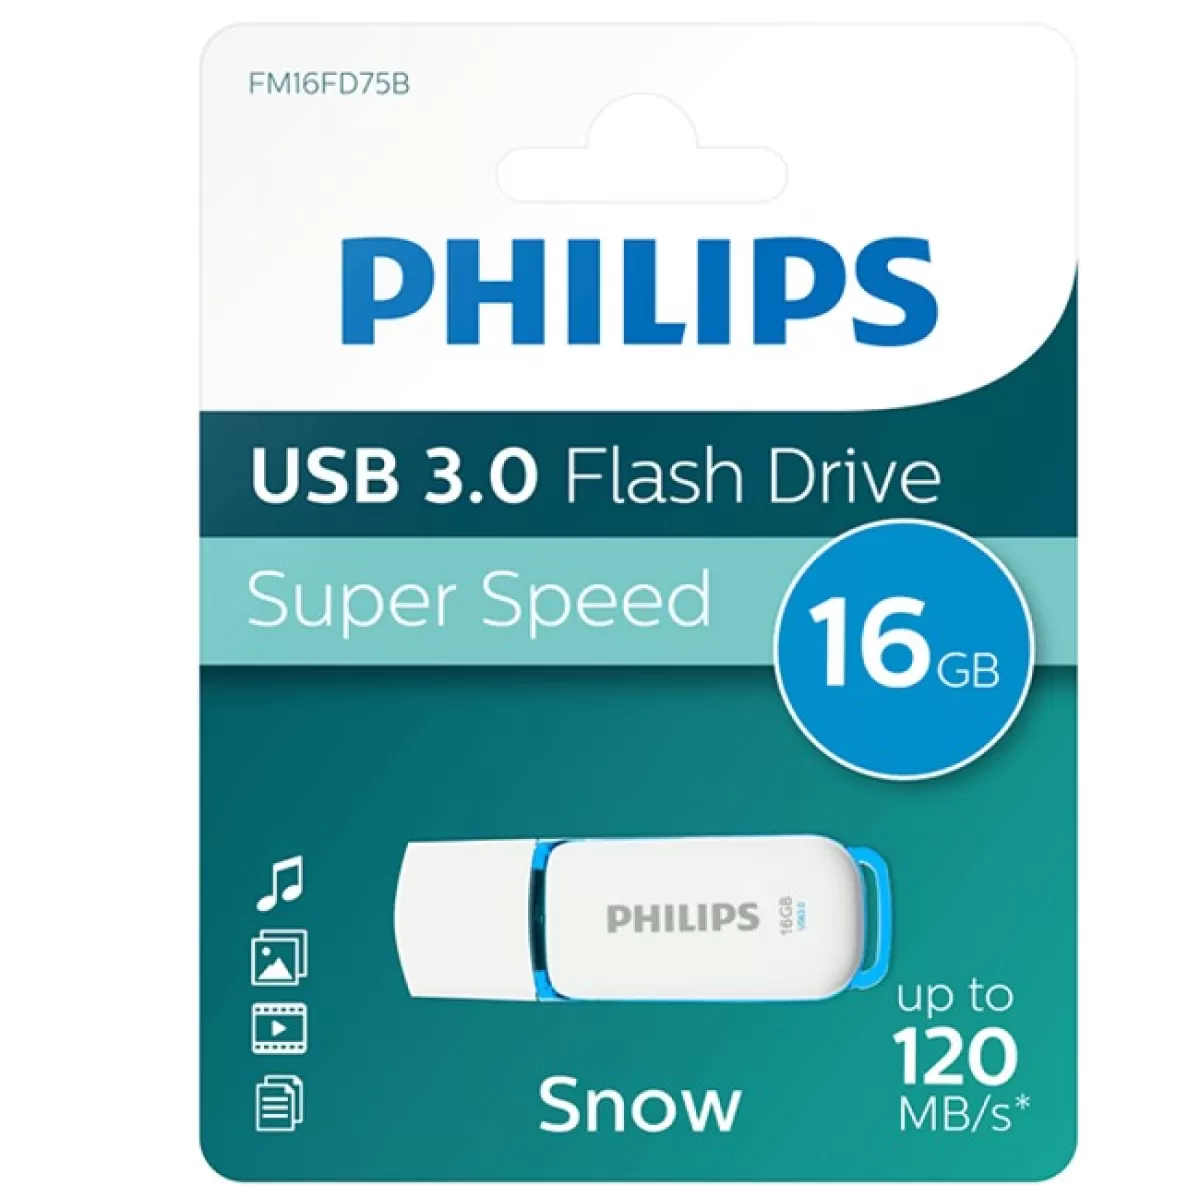 Flash Drive Philips USB 3.0 16 GB